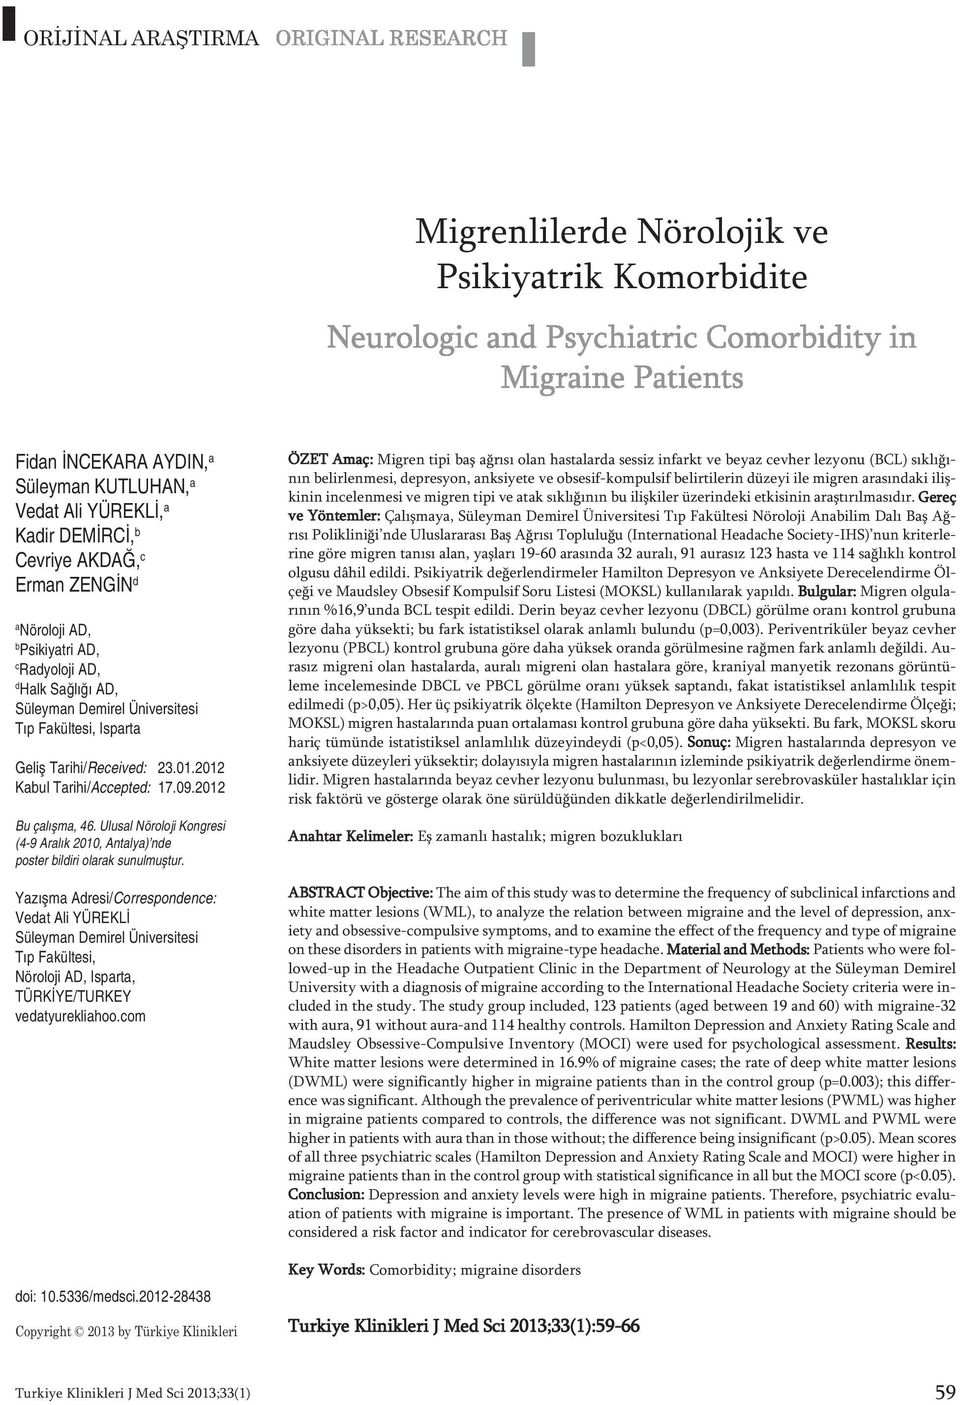 Ulusal Nöroloji Kongresi (4-9 Aralık 2010, Antalya) nde poster bildiri olarak sunulmuştur.